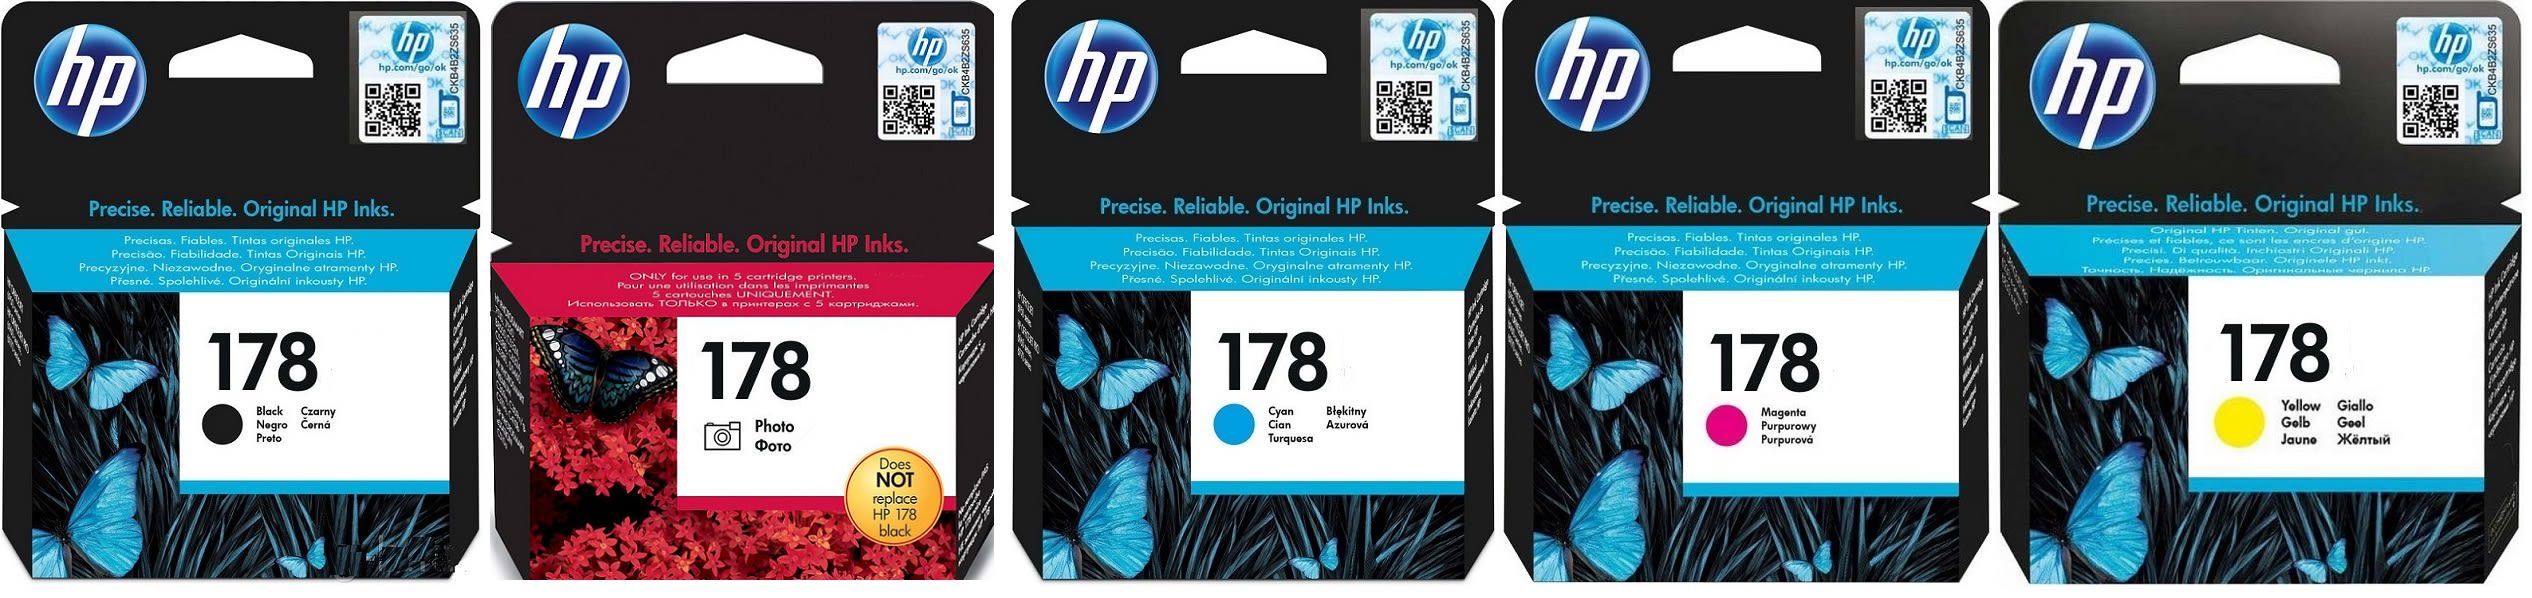 Картриджи hp 178 для HP Photosmart C5390. Купить комплект оригинальных картриджей.